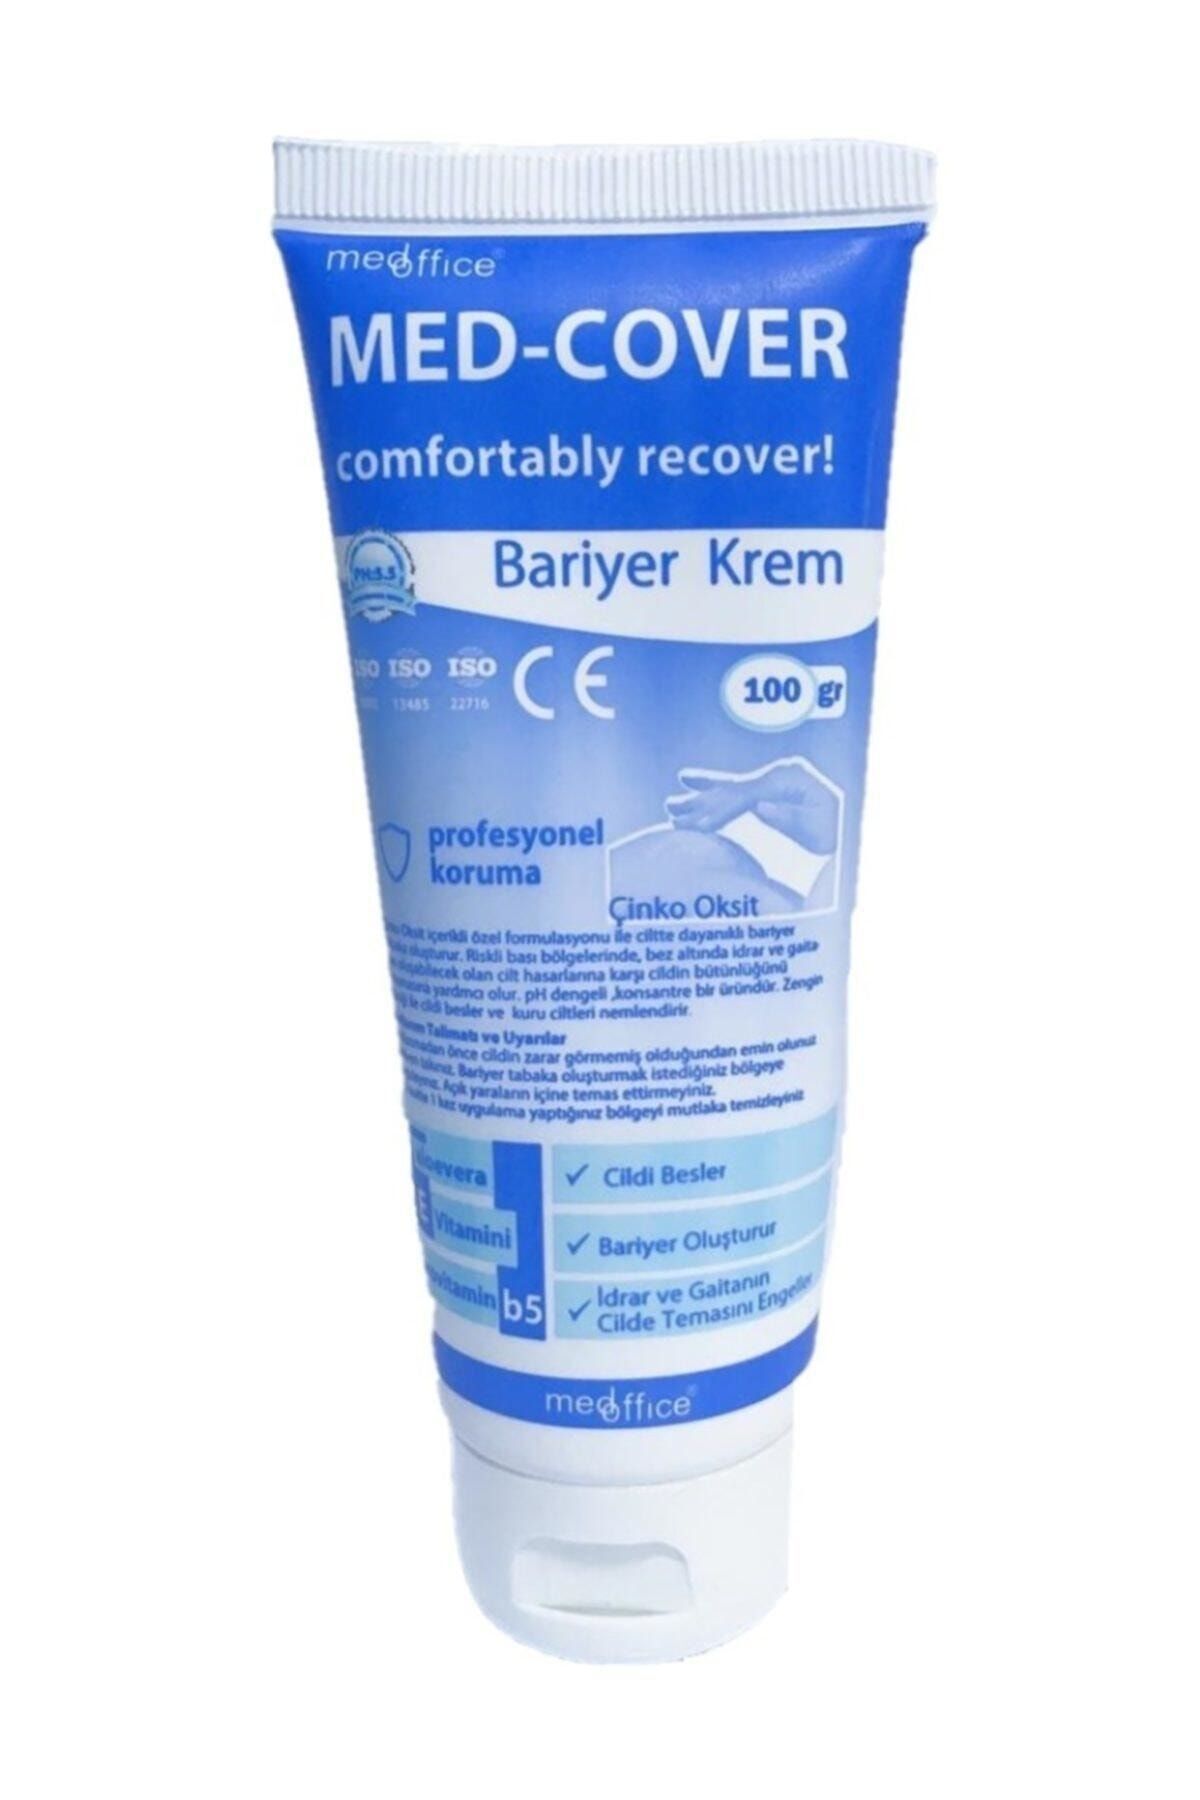 Medcover Med-cover Bariyer Krem 100 Gr - Koruyucu Bariyer Kremi - 1 Adet